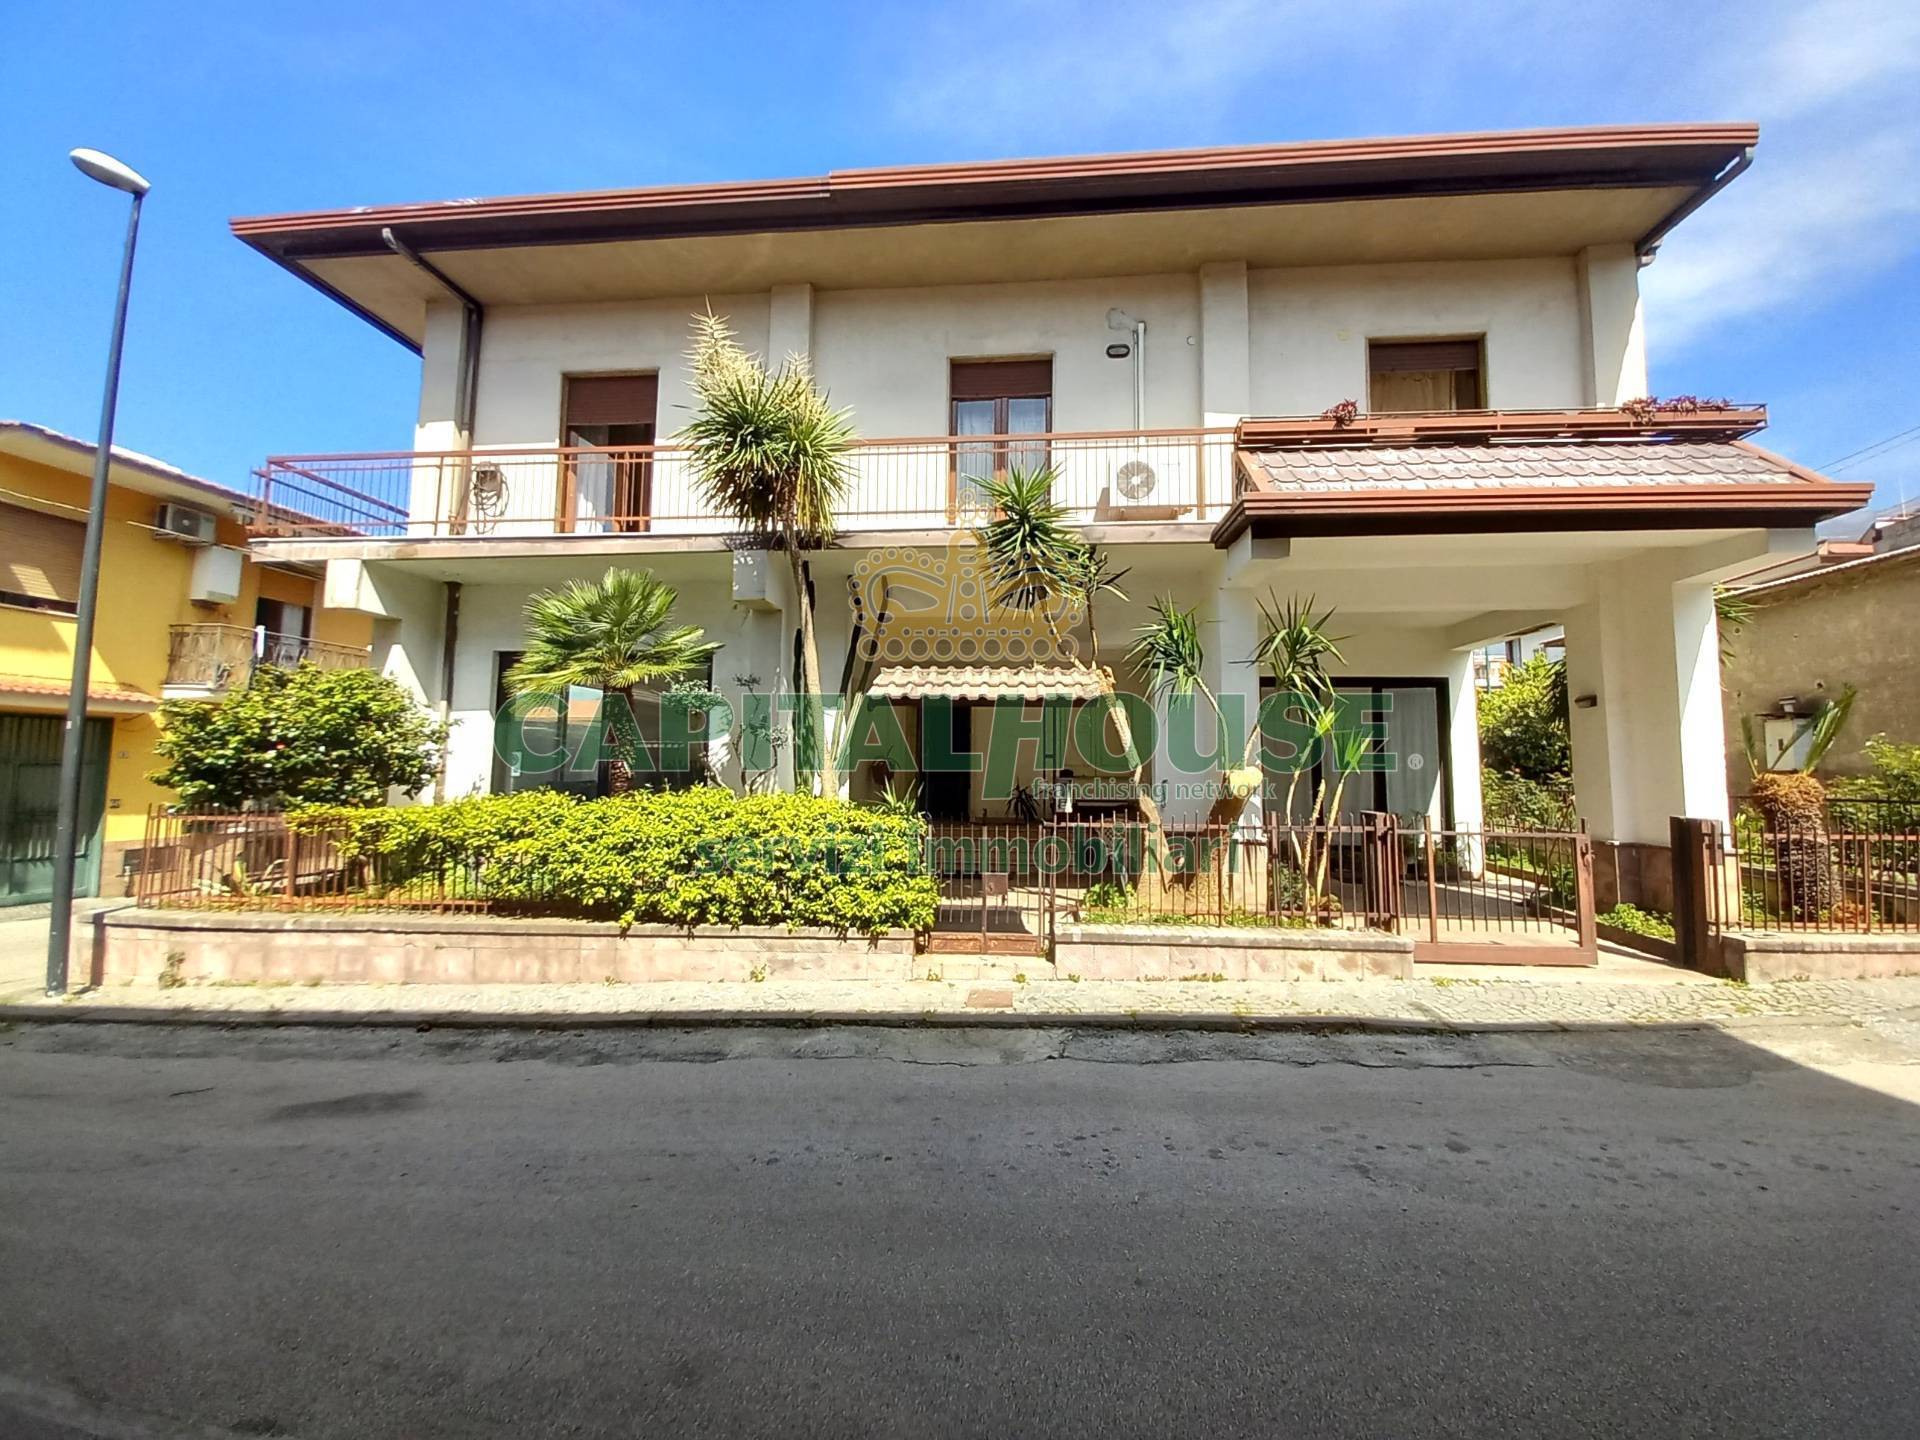 Appartamento in vendita a Baiano, 3 locali, prezzo € 138.000 | PortaleAgenzieImmobiliari.it